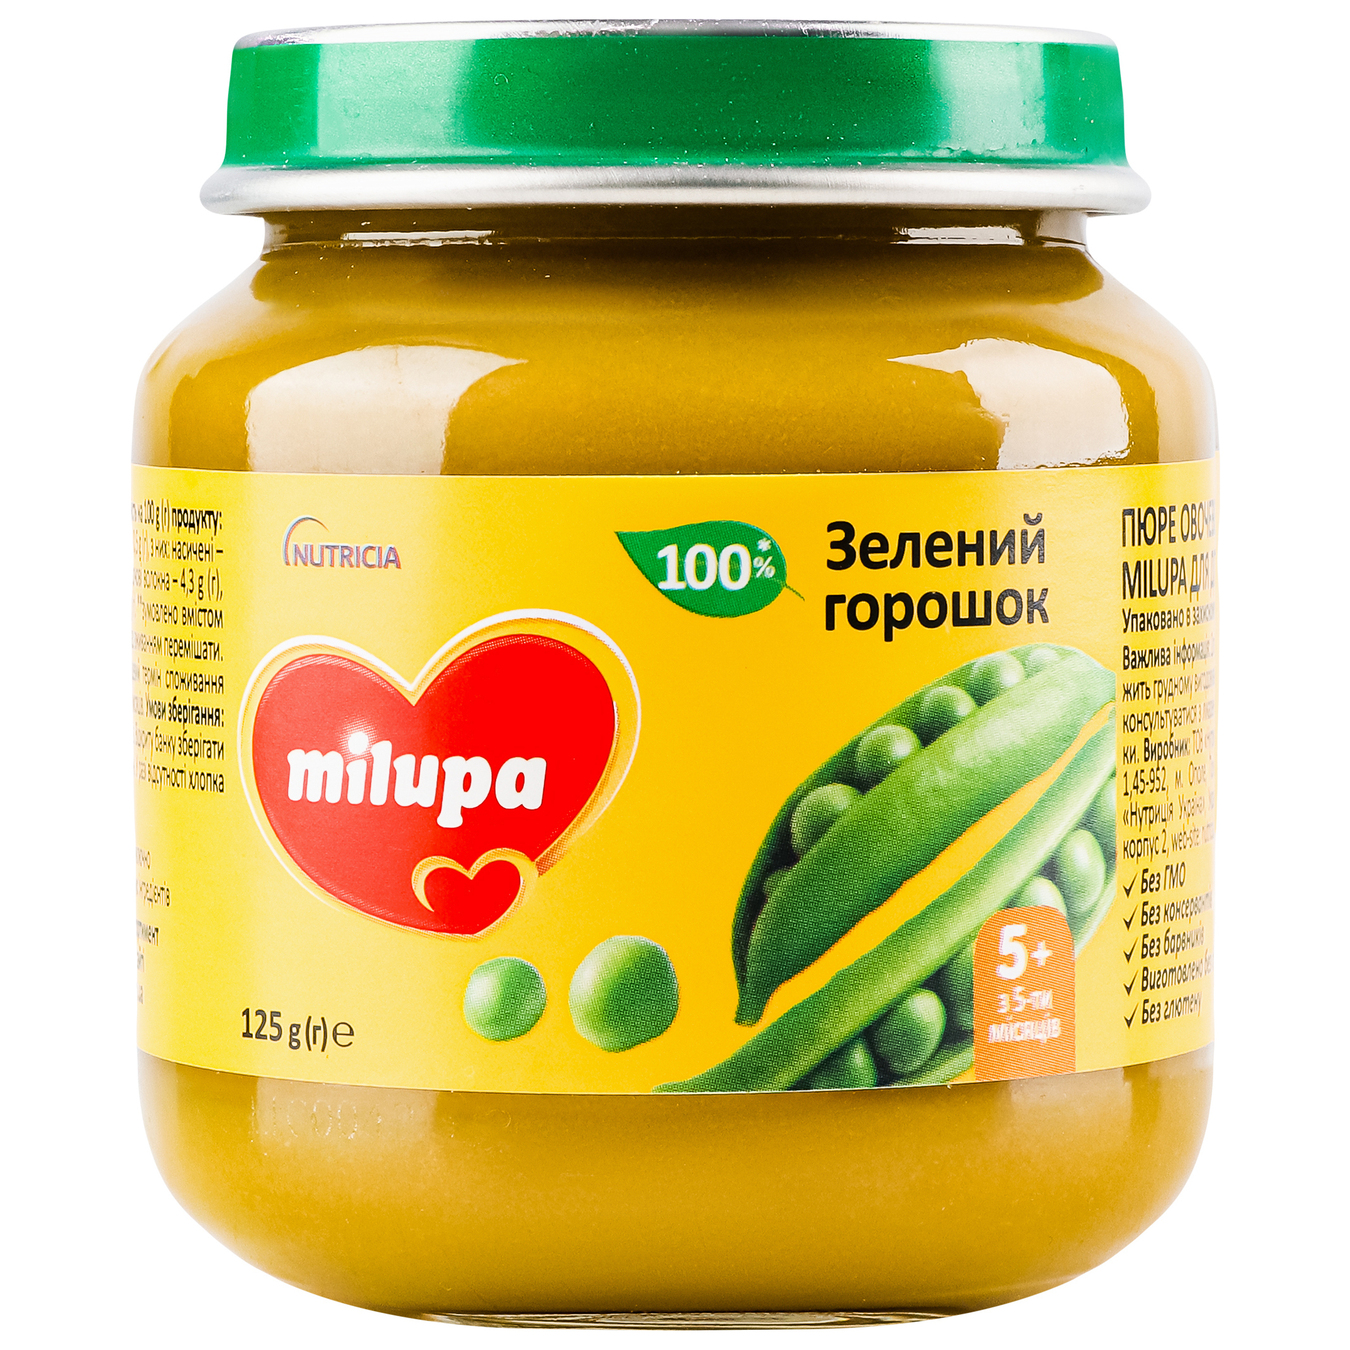 Milupa vegetable puree Green peas jar 125g